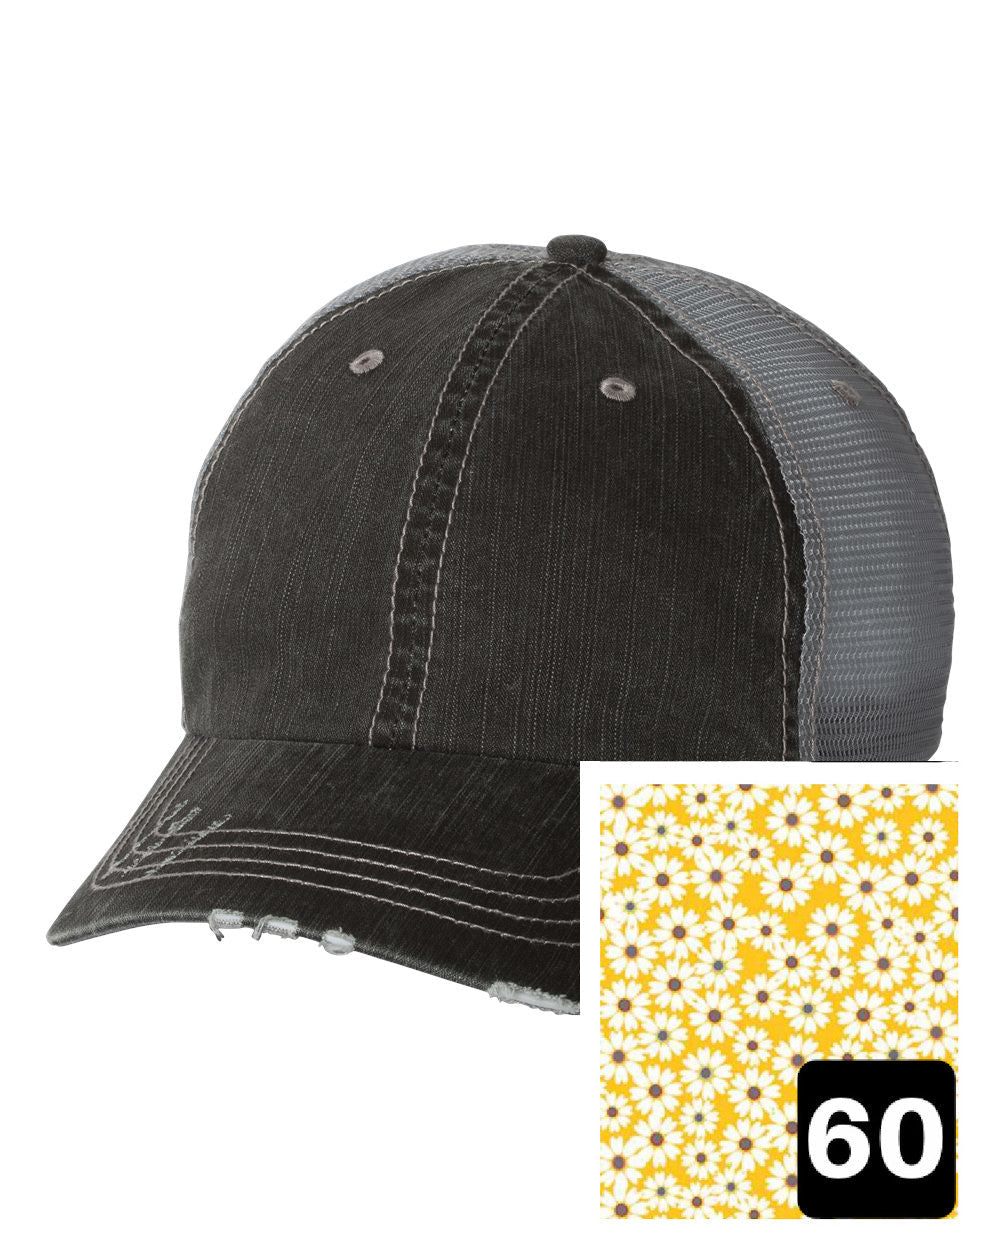 Arizona Hat | Gray Distressed Trucker Cap | Many Fabric Choices